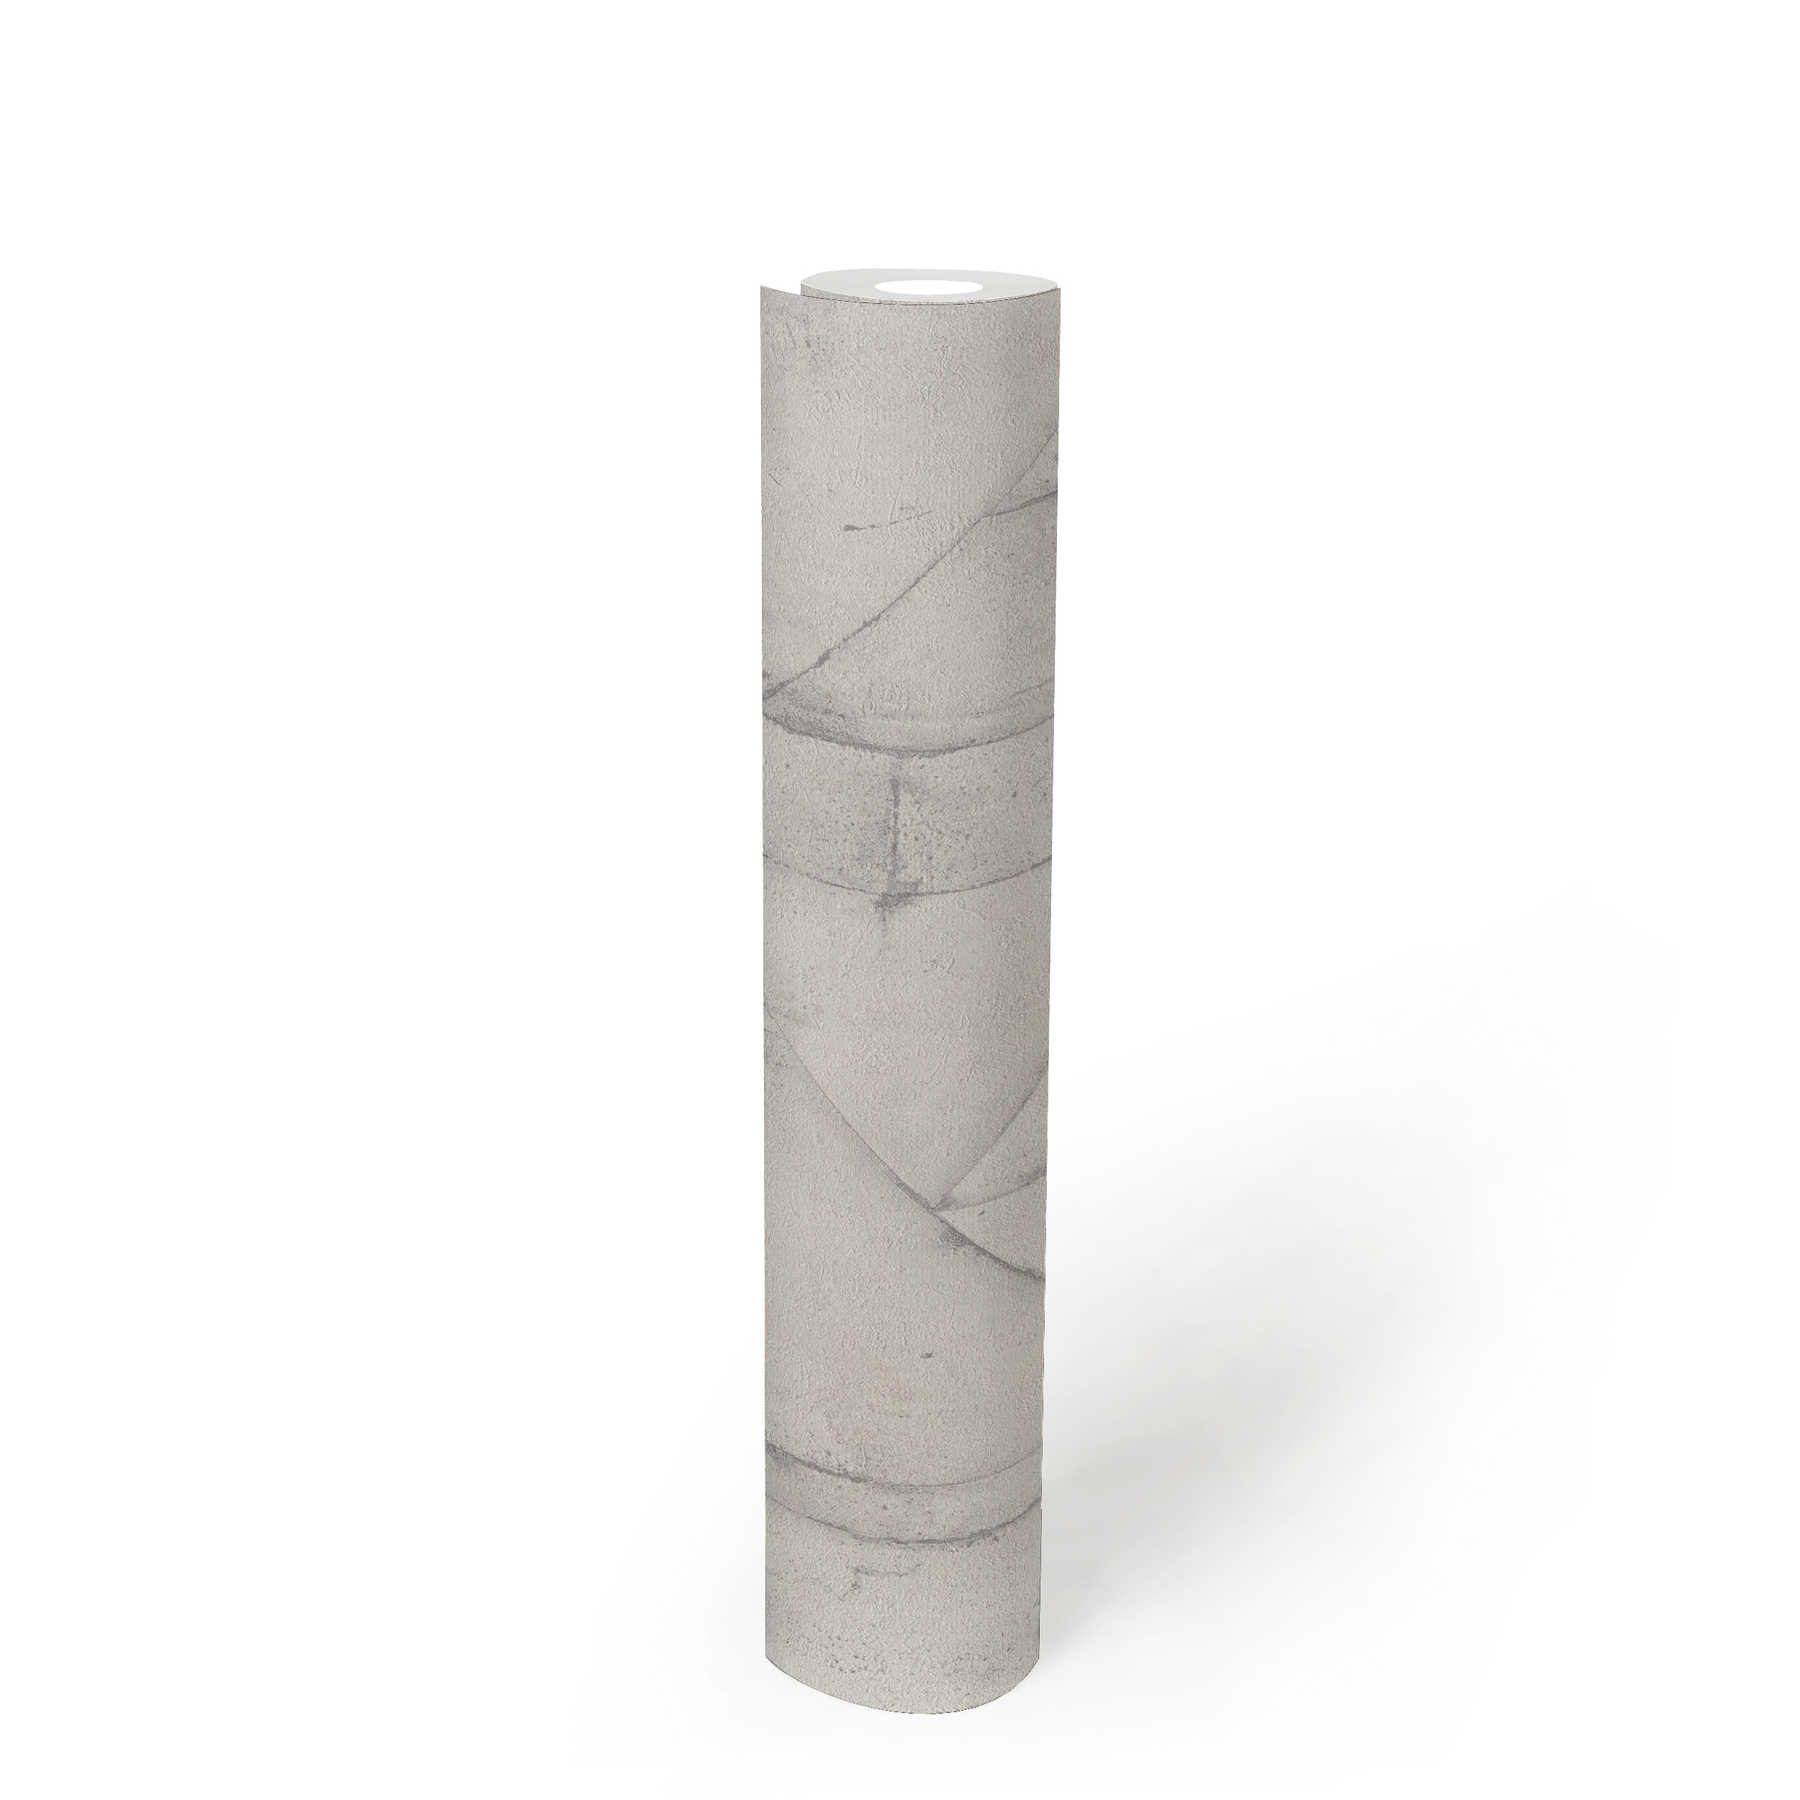             Patroonbehang beton used look & rustiek - grijs, wit
        